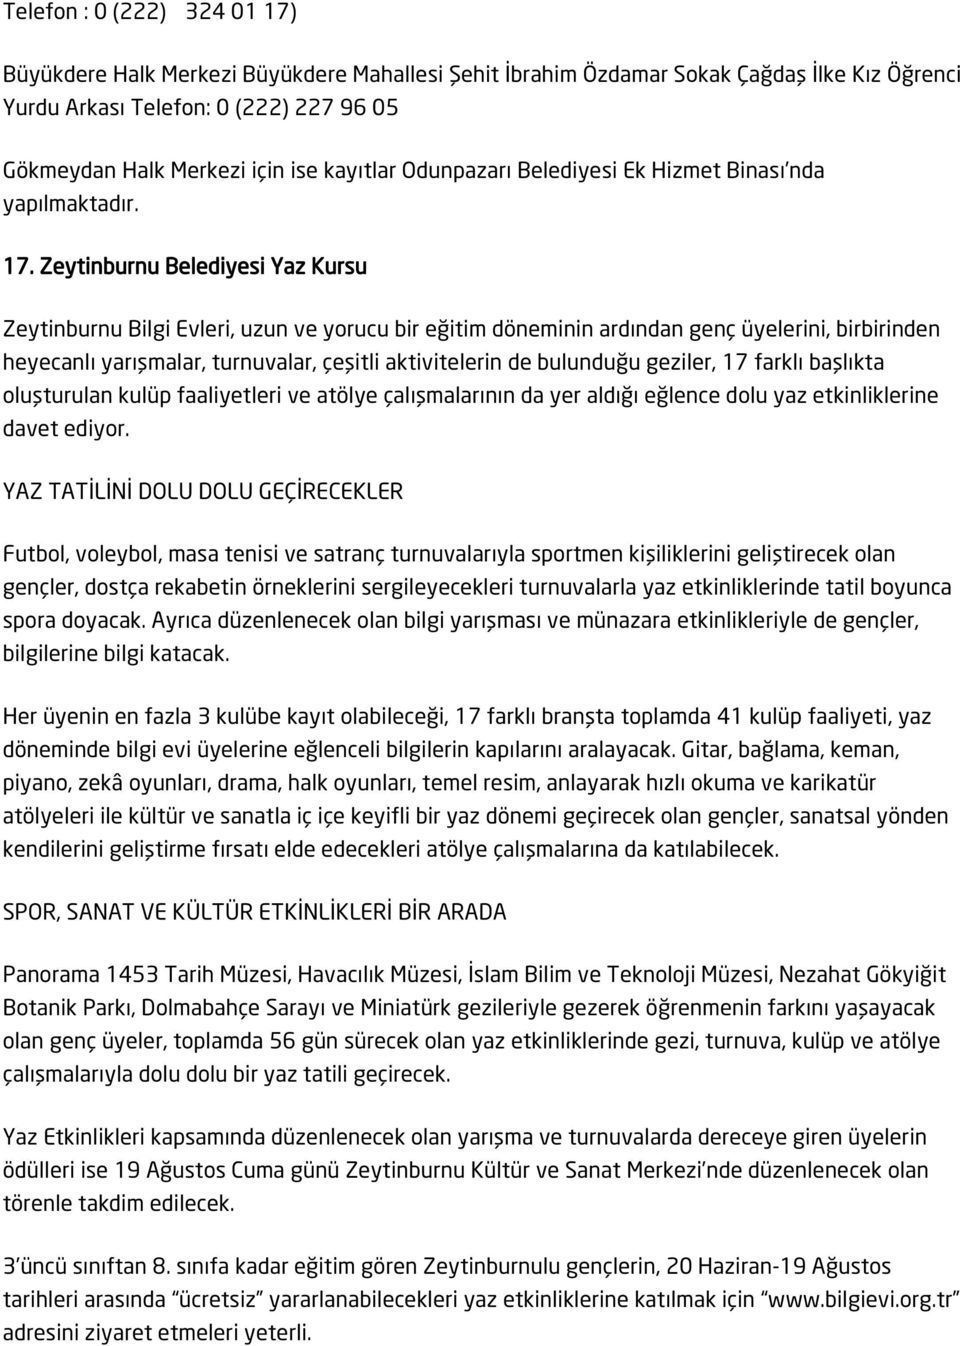 Zeytinburnu Belediyesi Yaz Kursu Zeytinburnu Bilgi Evleri, uzun ve yorucu bir eğitim döneminin ardından genç üyelerini, birbirinden heyecanlı yarışmalar, turnuvalar, çeşitli aktivitelerin de